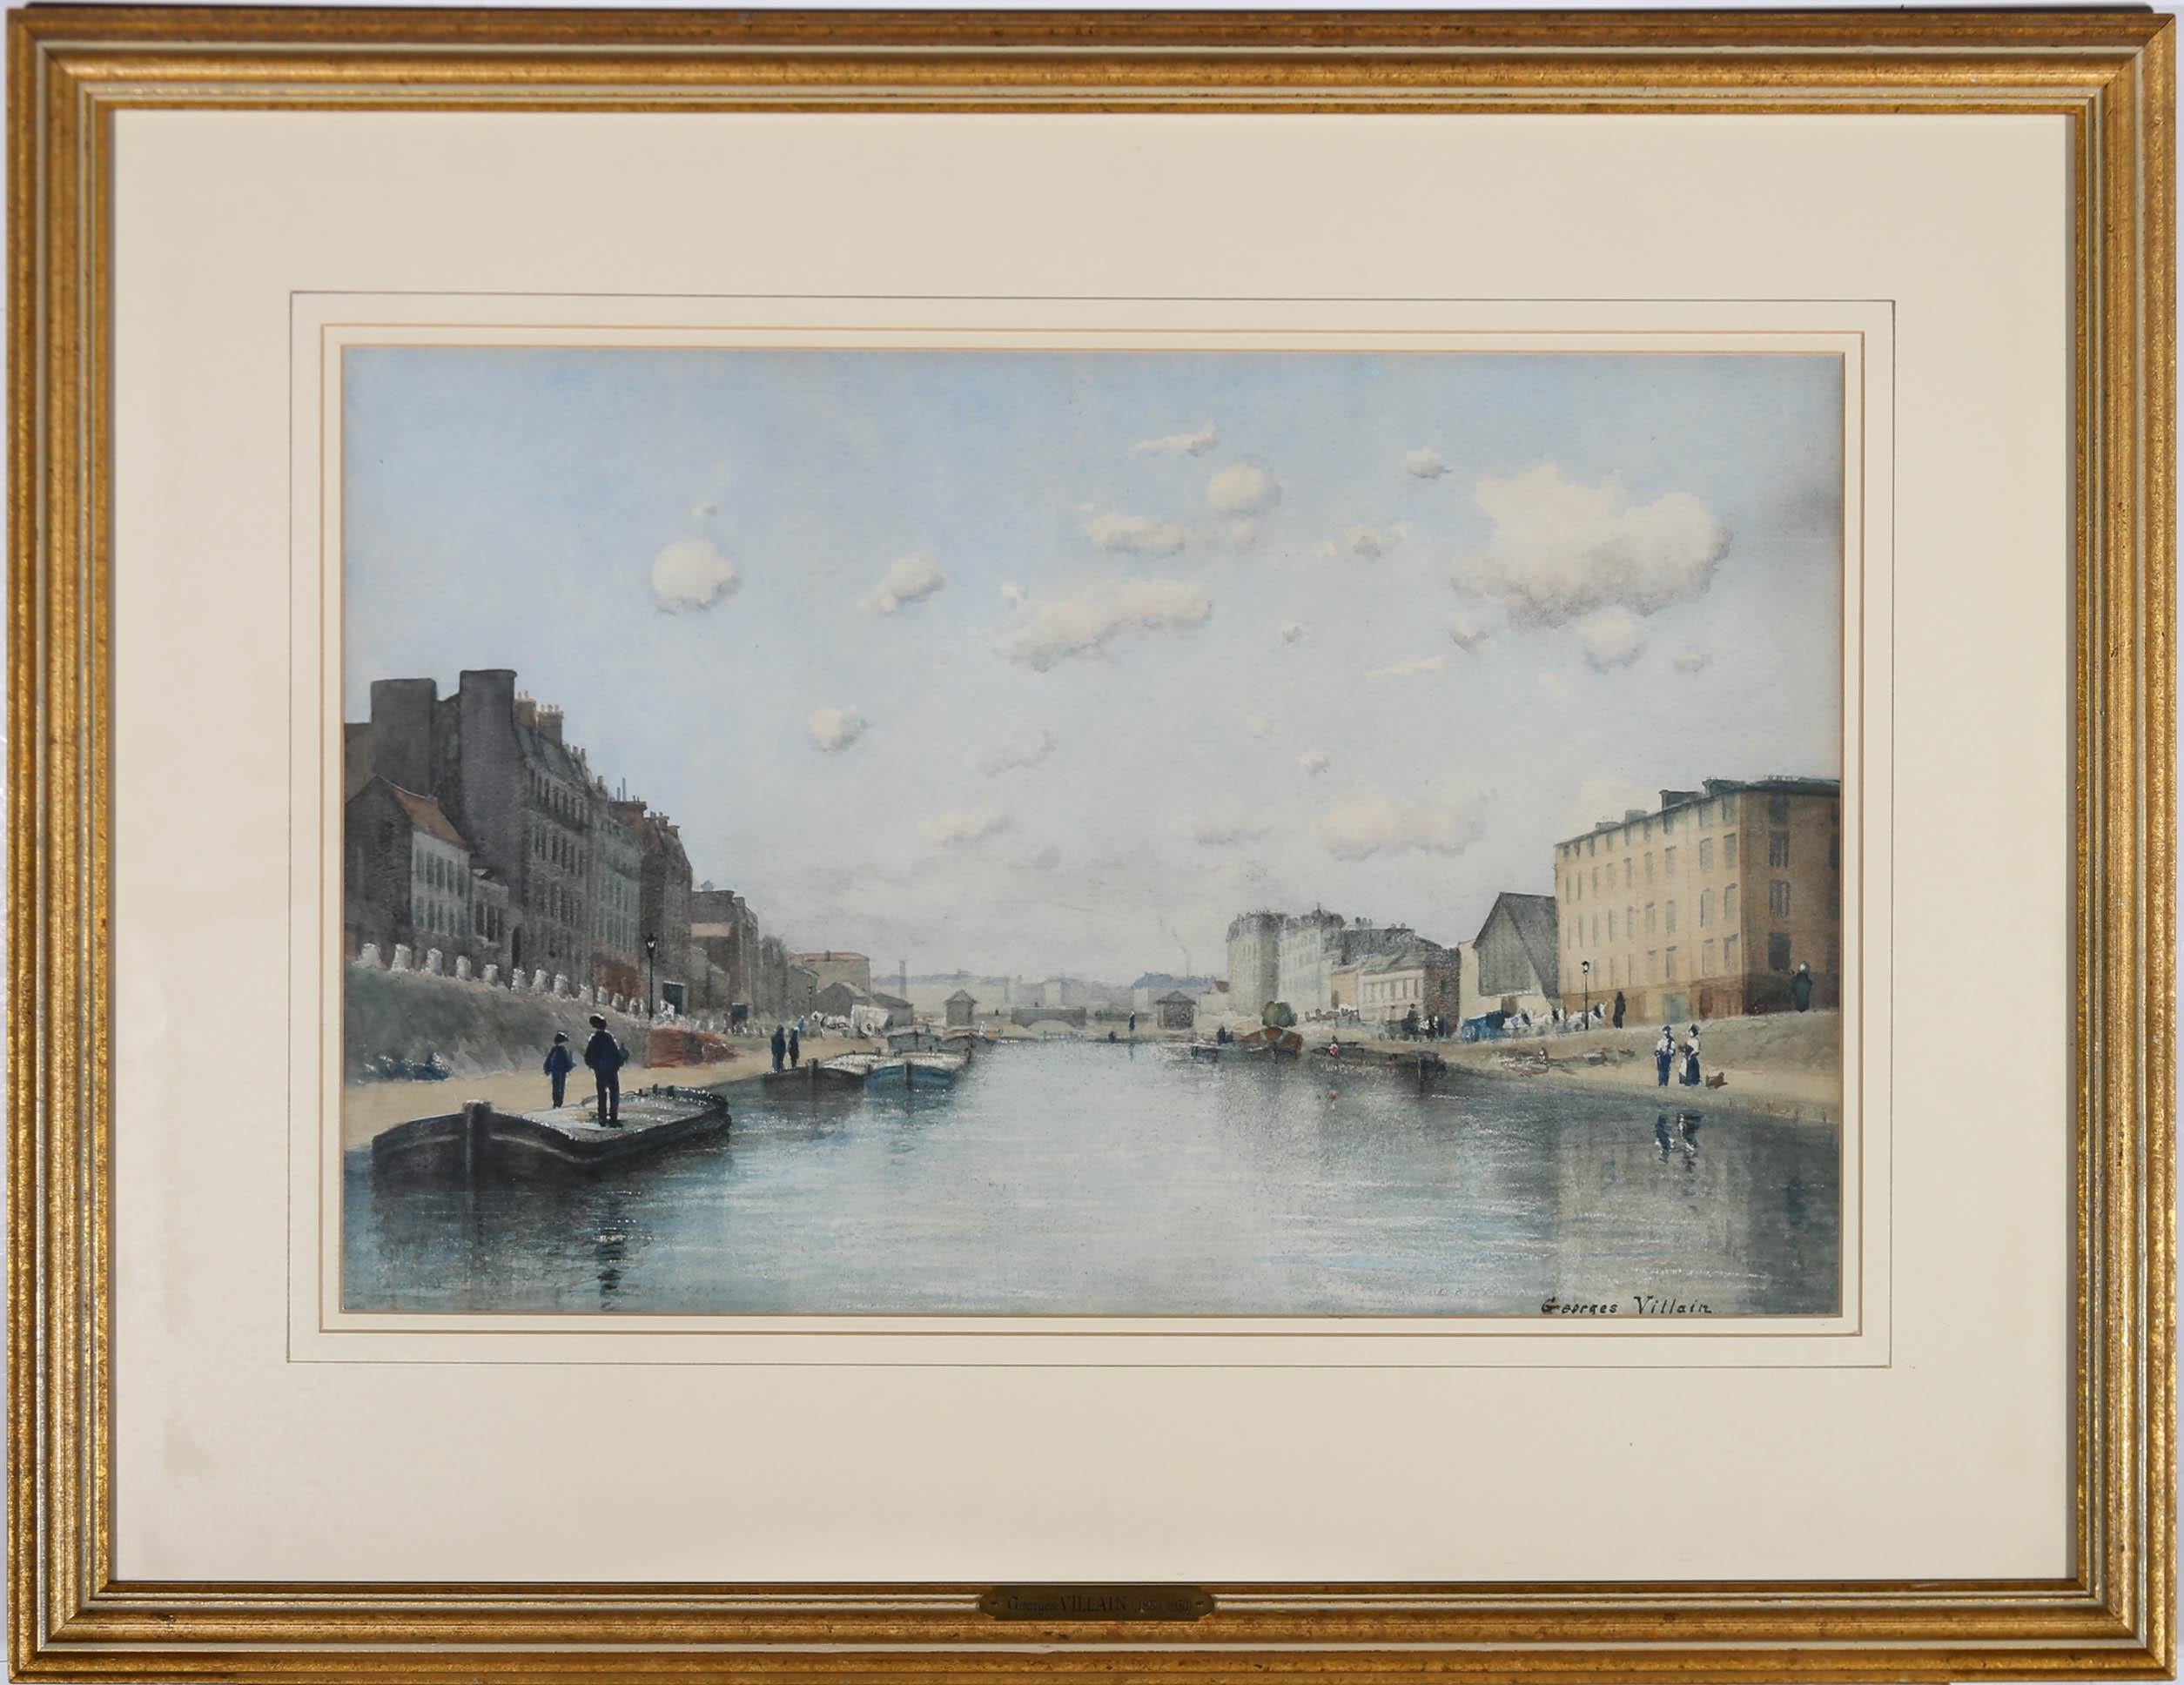 Eine perspektivische Flussszene in Aquarell von Georges Villain (1854-1930), die französische Stadthäuser parallel zu vertäuten Kähnen auf einer belebten Wasserstraße zeigt. Das Gemälde ist in der rechten unteren Ecke signiert. Gut präsentiert in